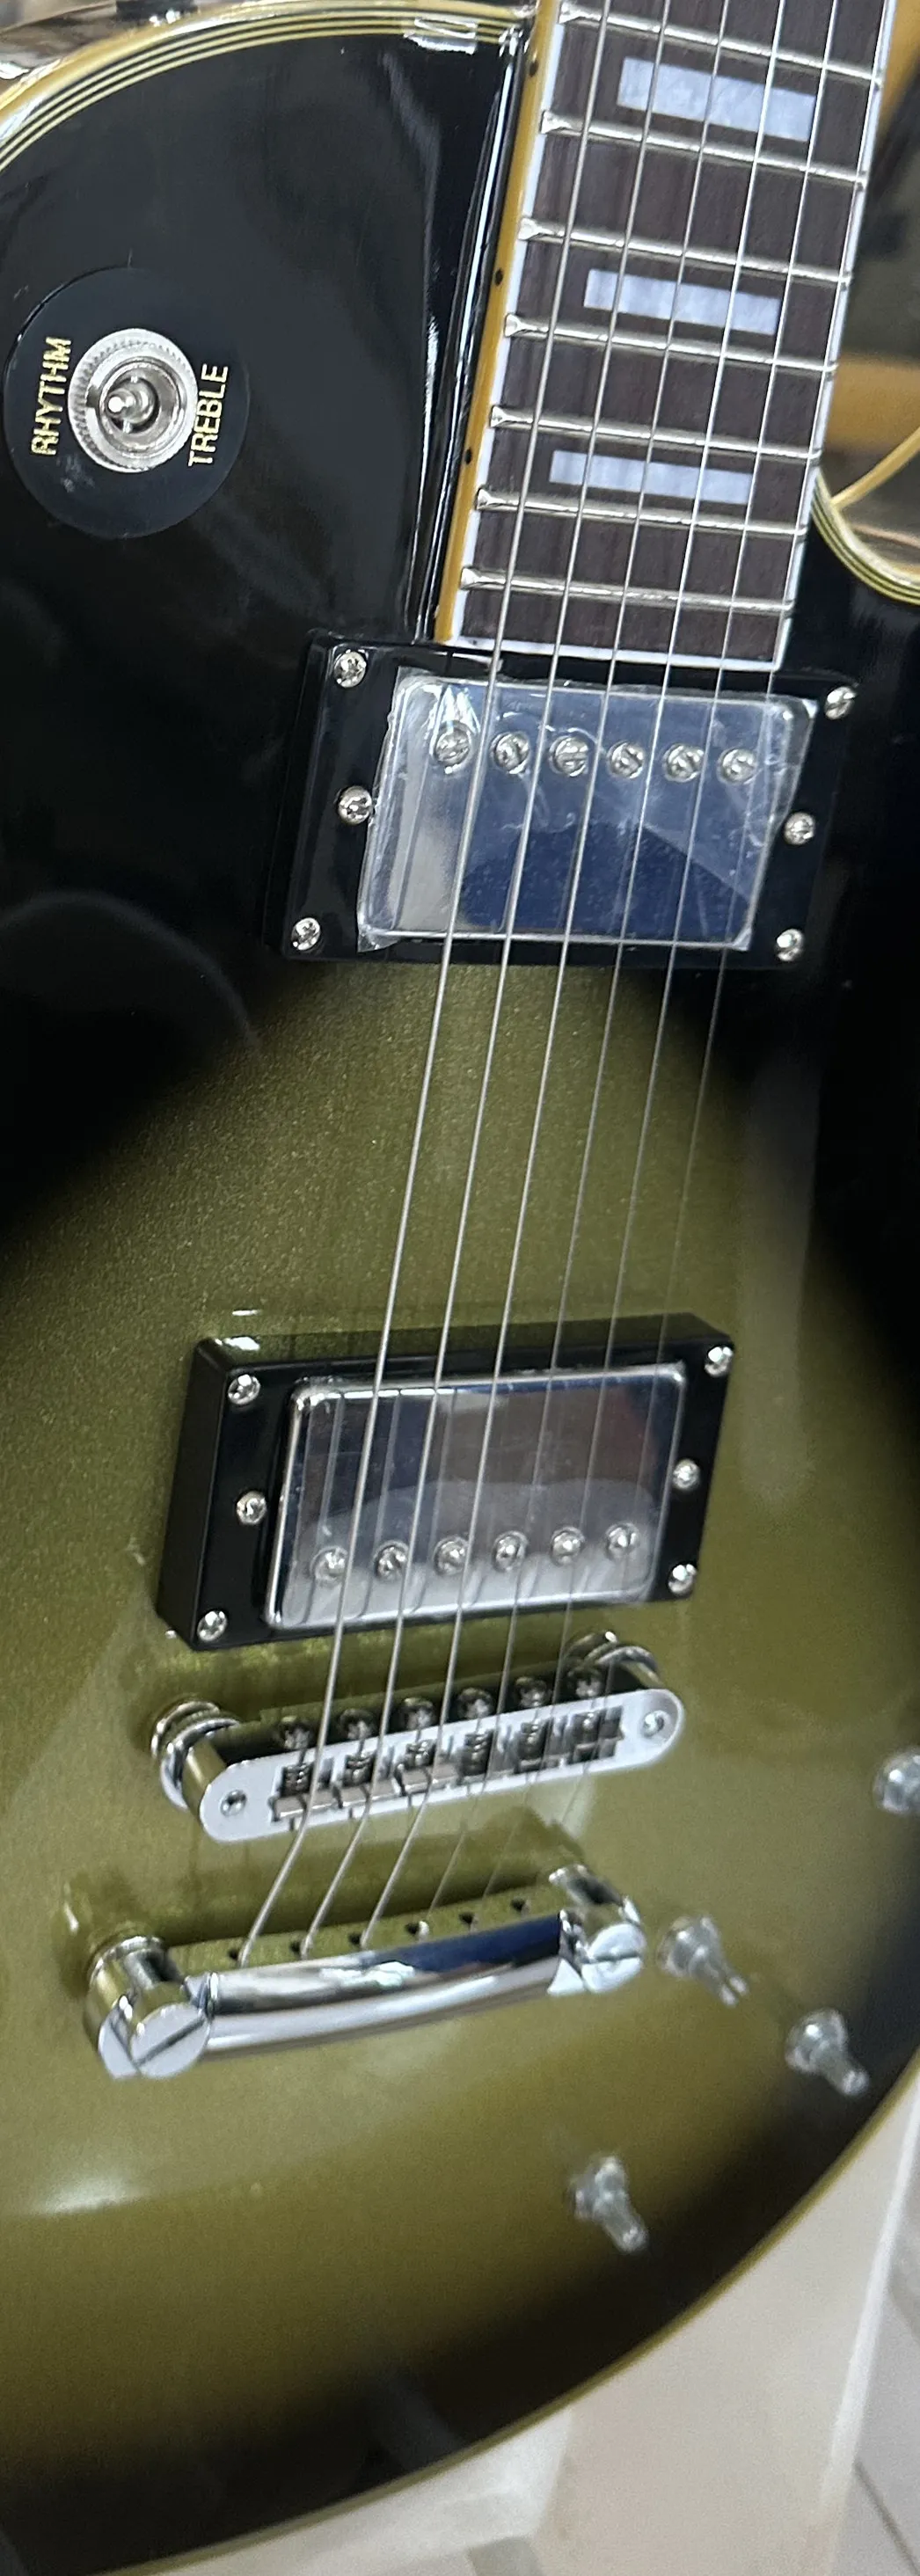 Standaard elektrische gitaar, SG elektrische gitaar, bloempotmozaïek, bordeauxrood, zilveren vibrato